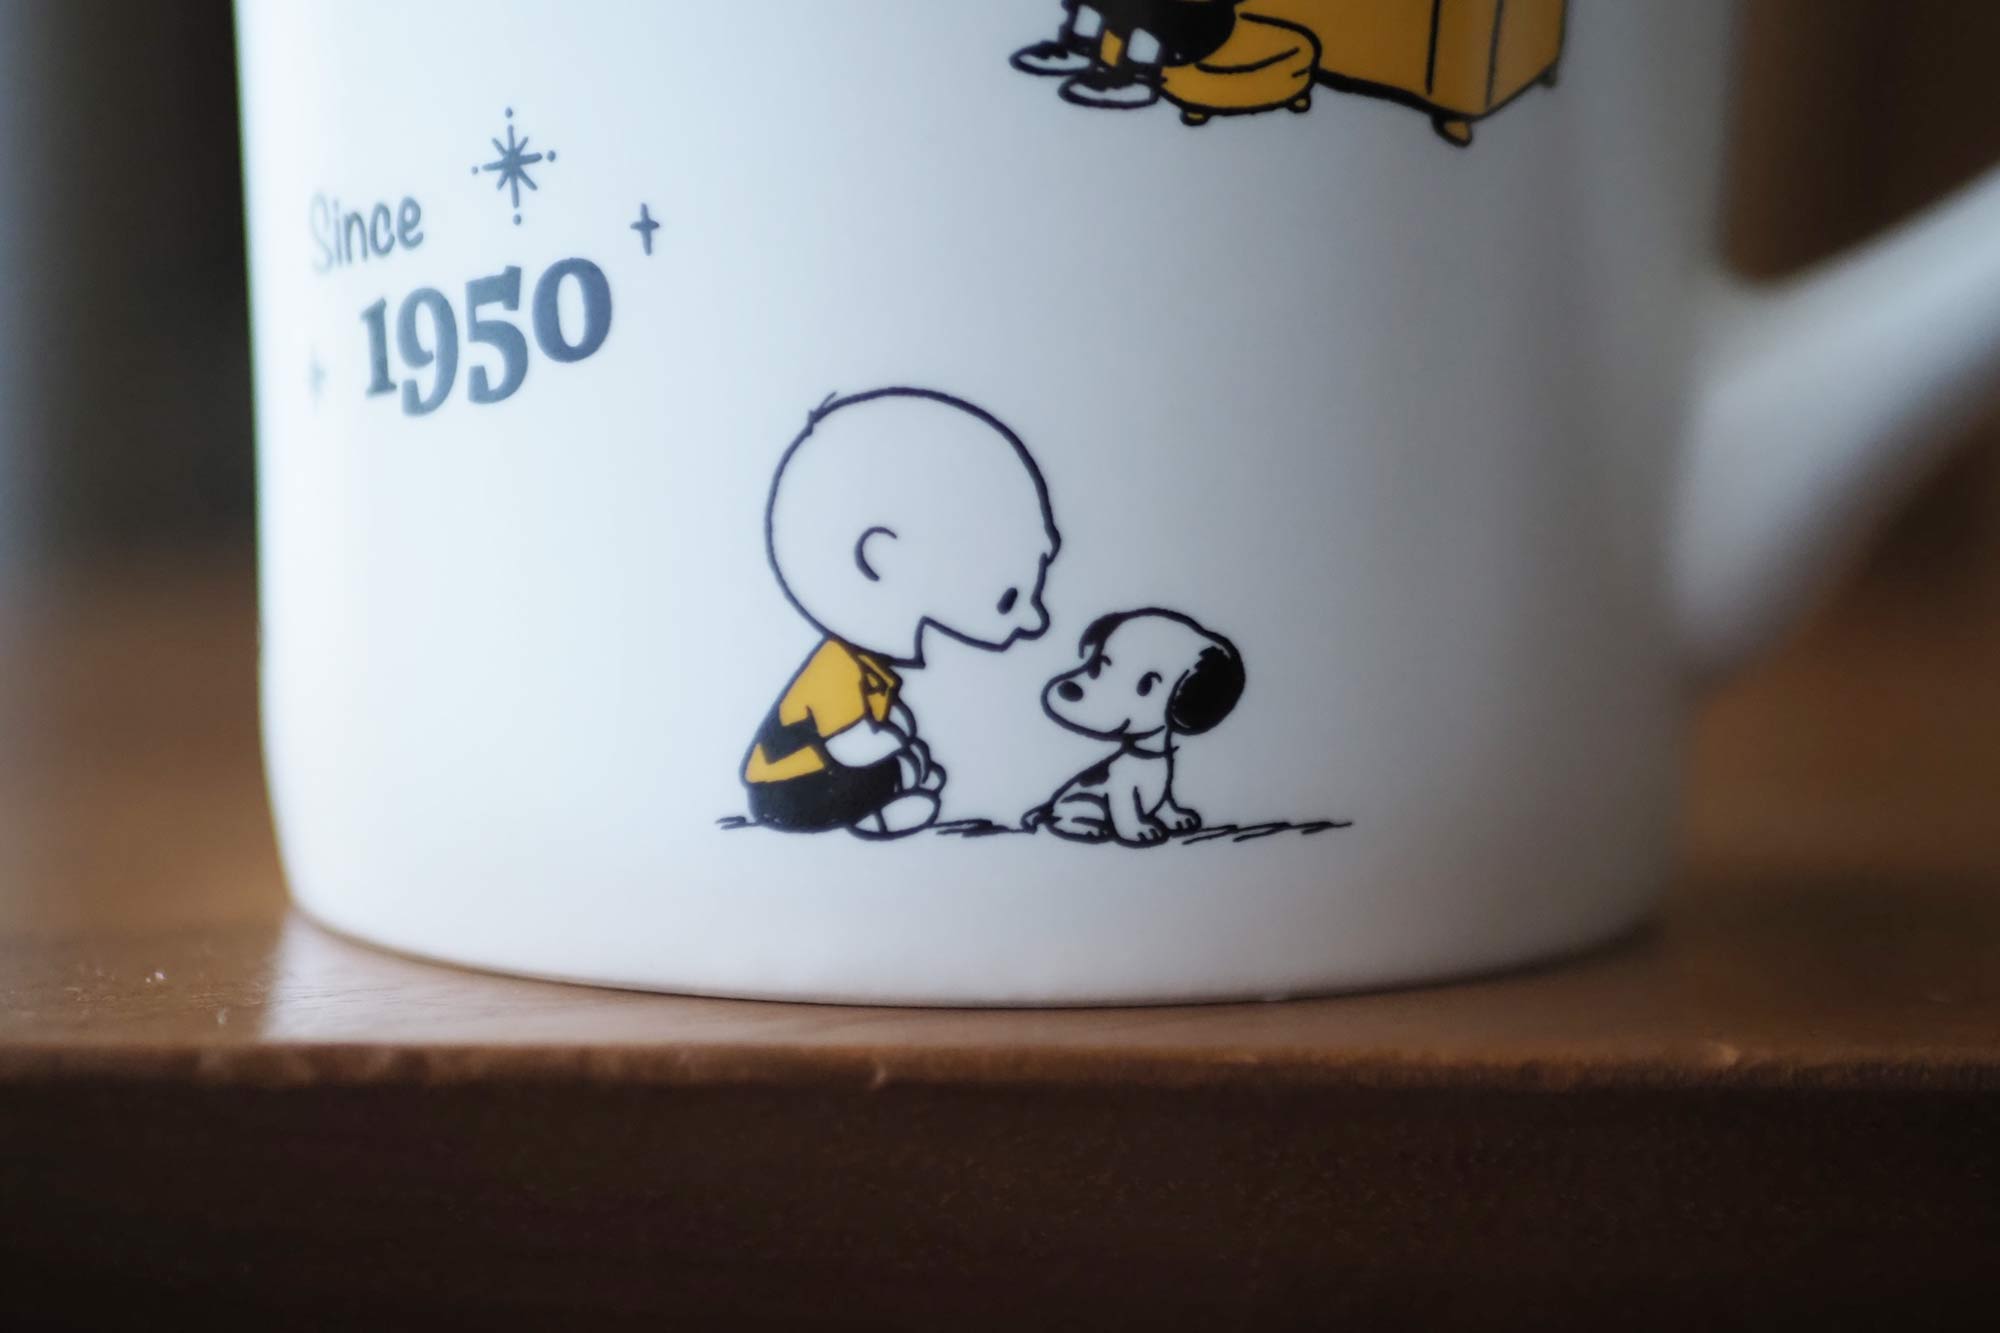 スヌーピー,70周年記念,マグカップ,可愛い,人気,コーヒー,紅茶,安い